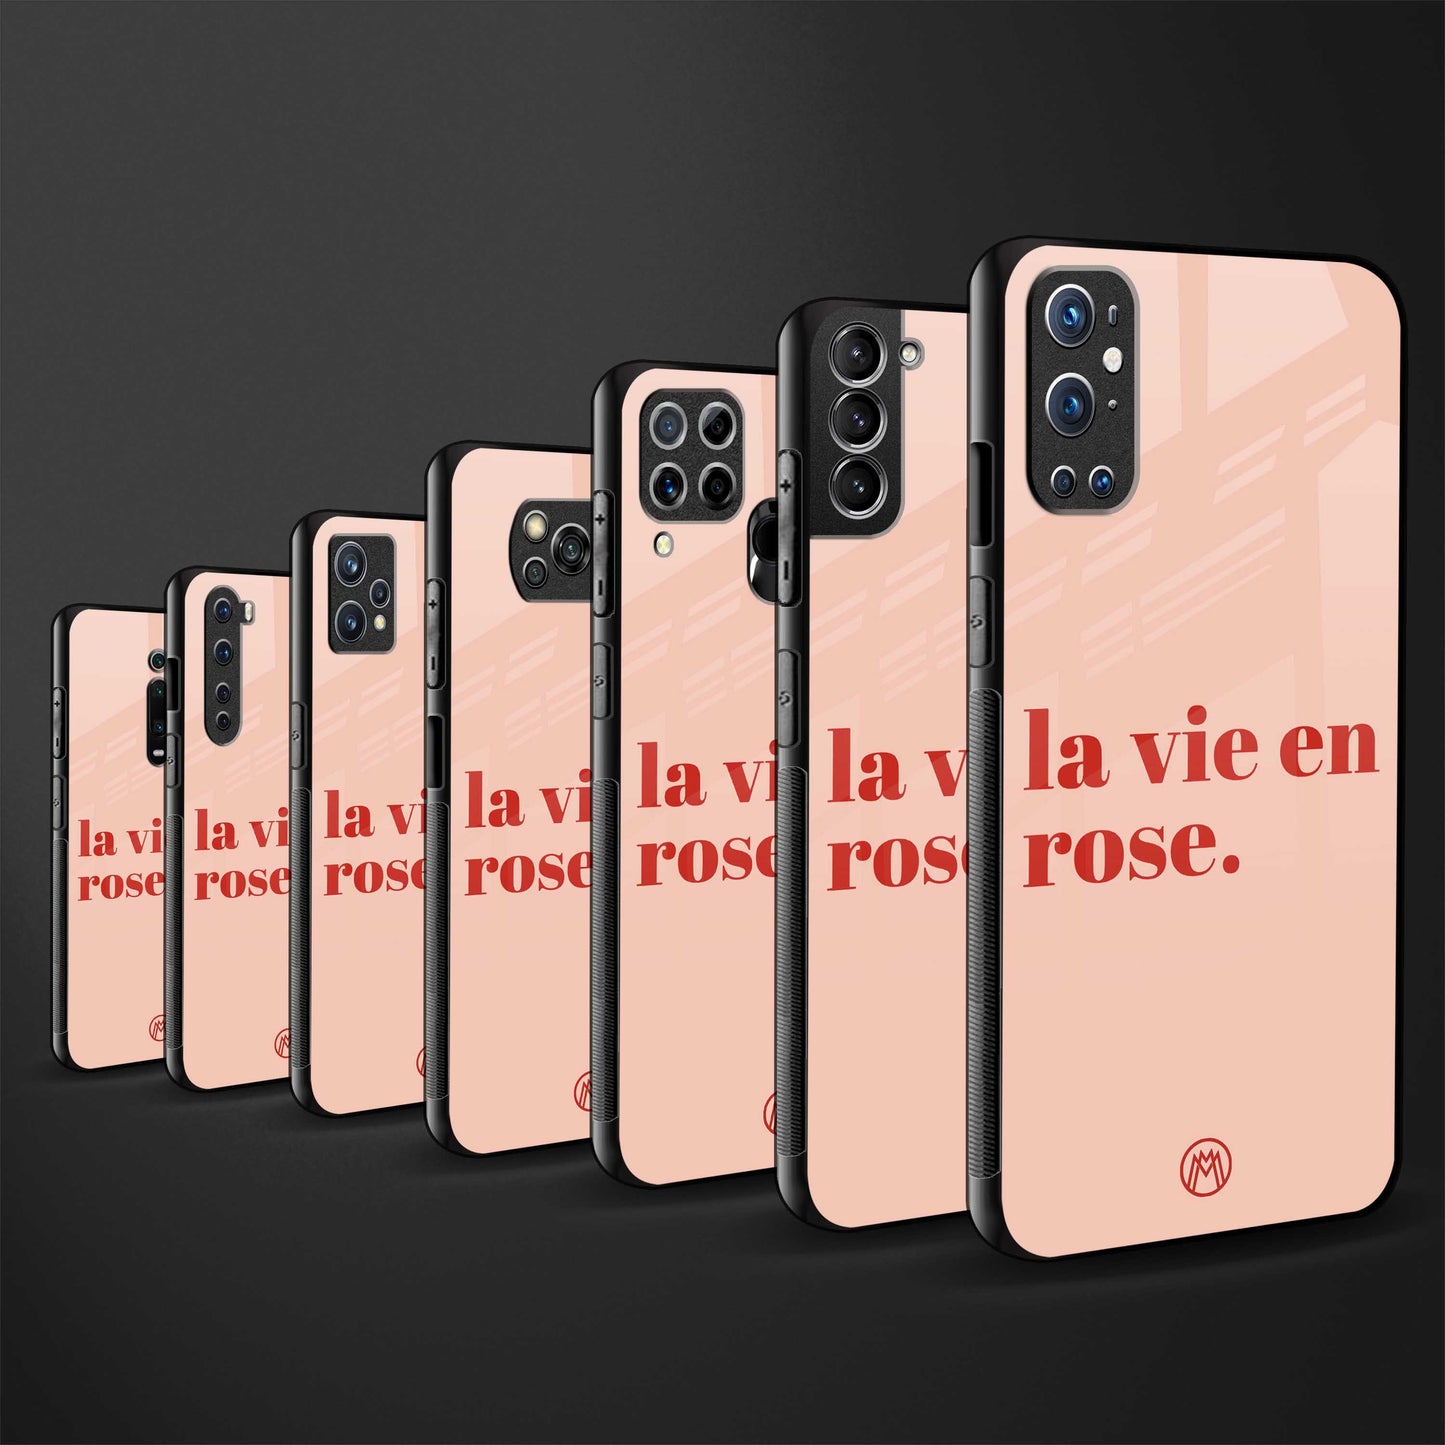 la vie en rose quote glass case for iphone 13 pro max image-3